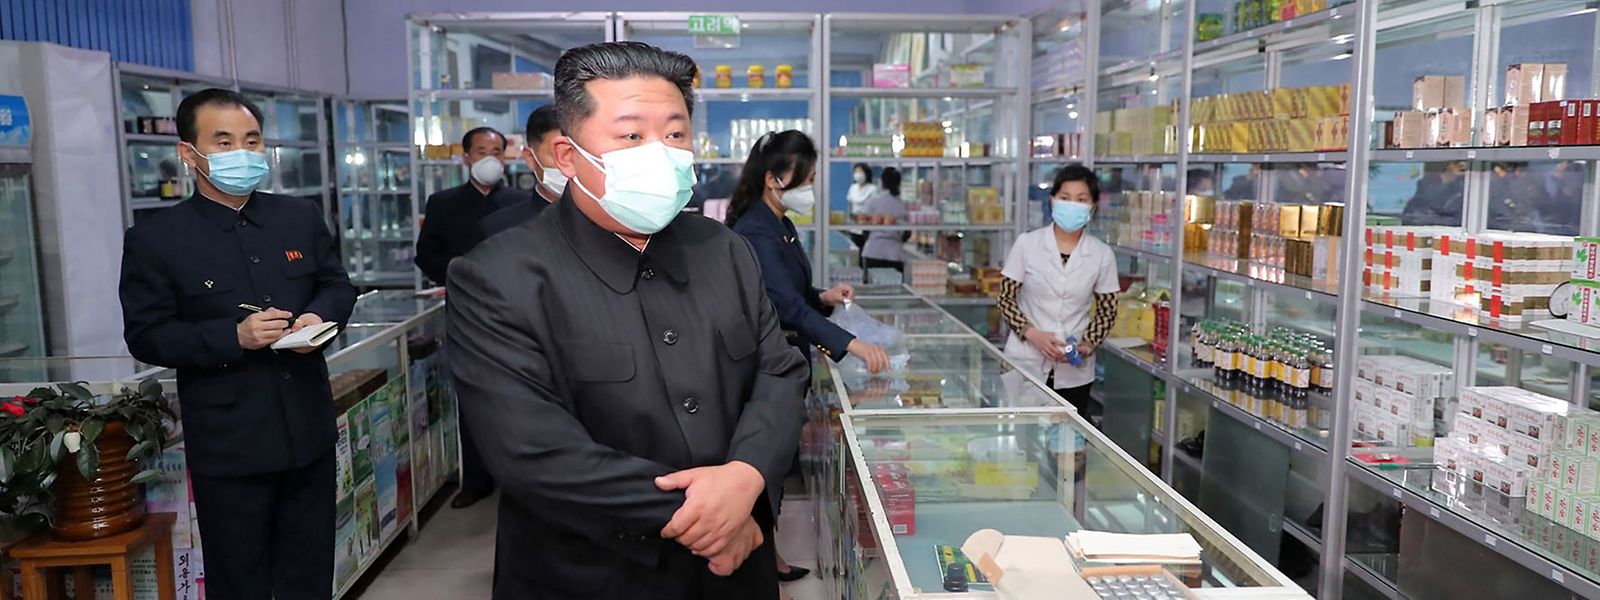 O líder Kim Jong Un em visita a uma farmácia em Pyongyang. 